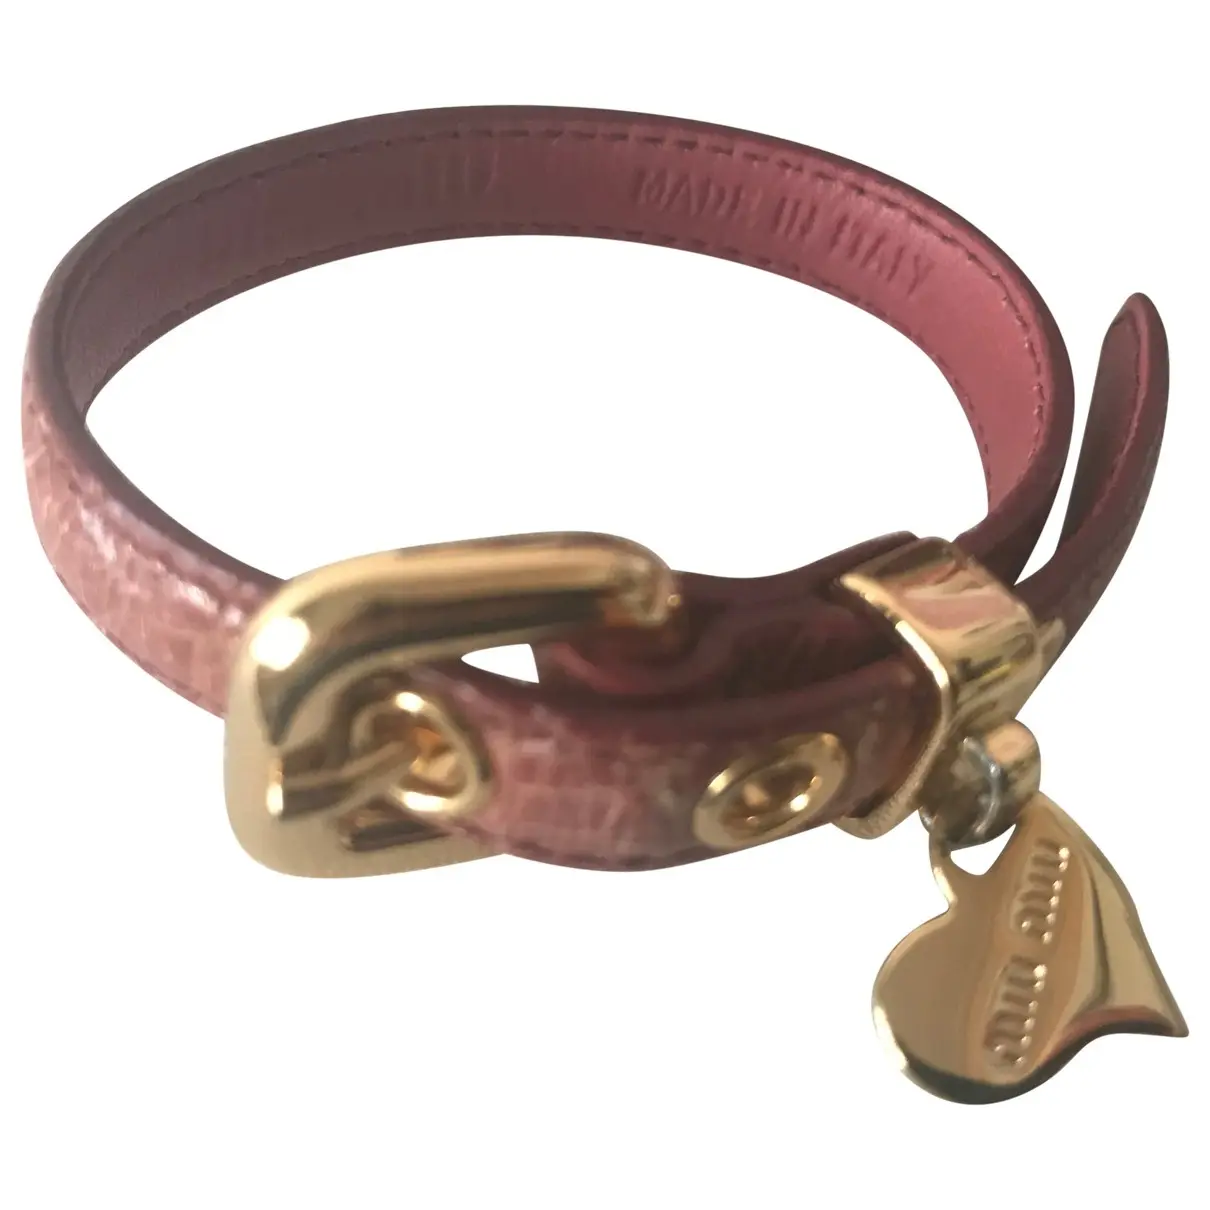 Leather bracelet Miu Miu